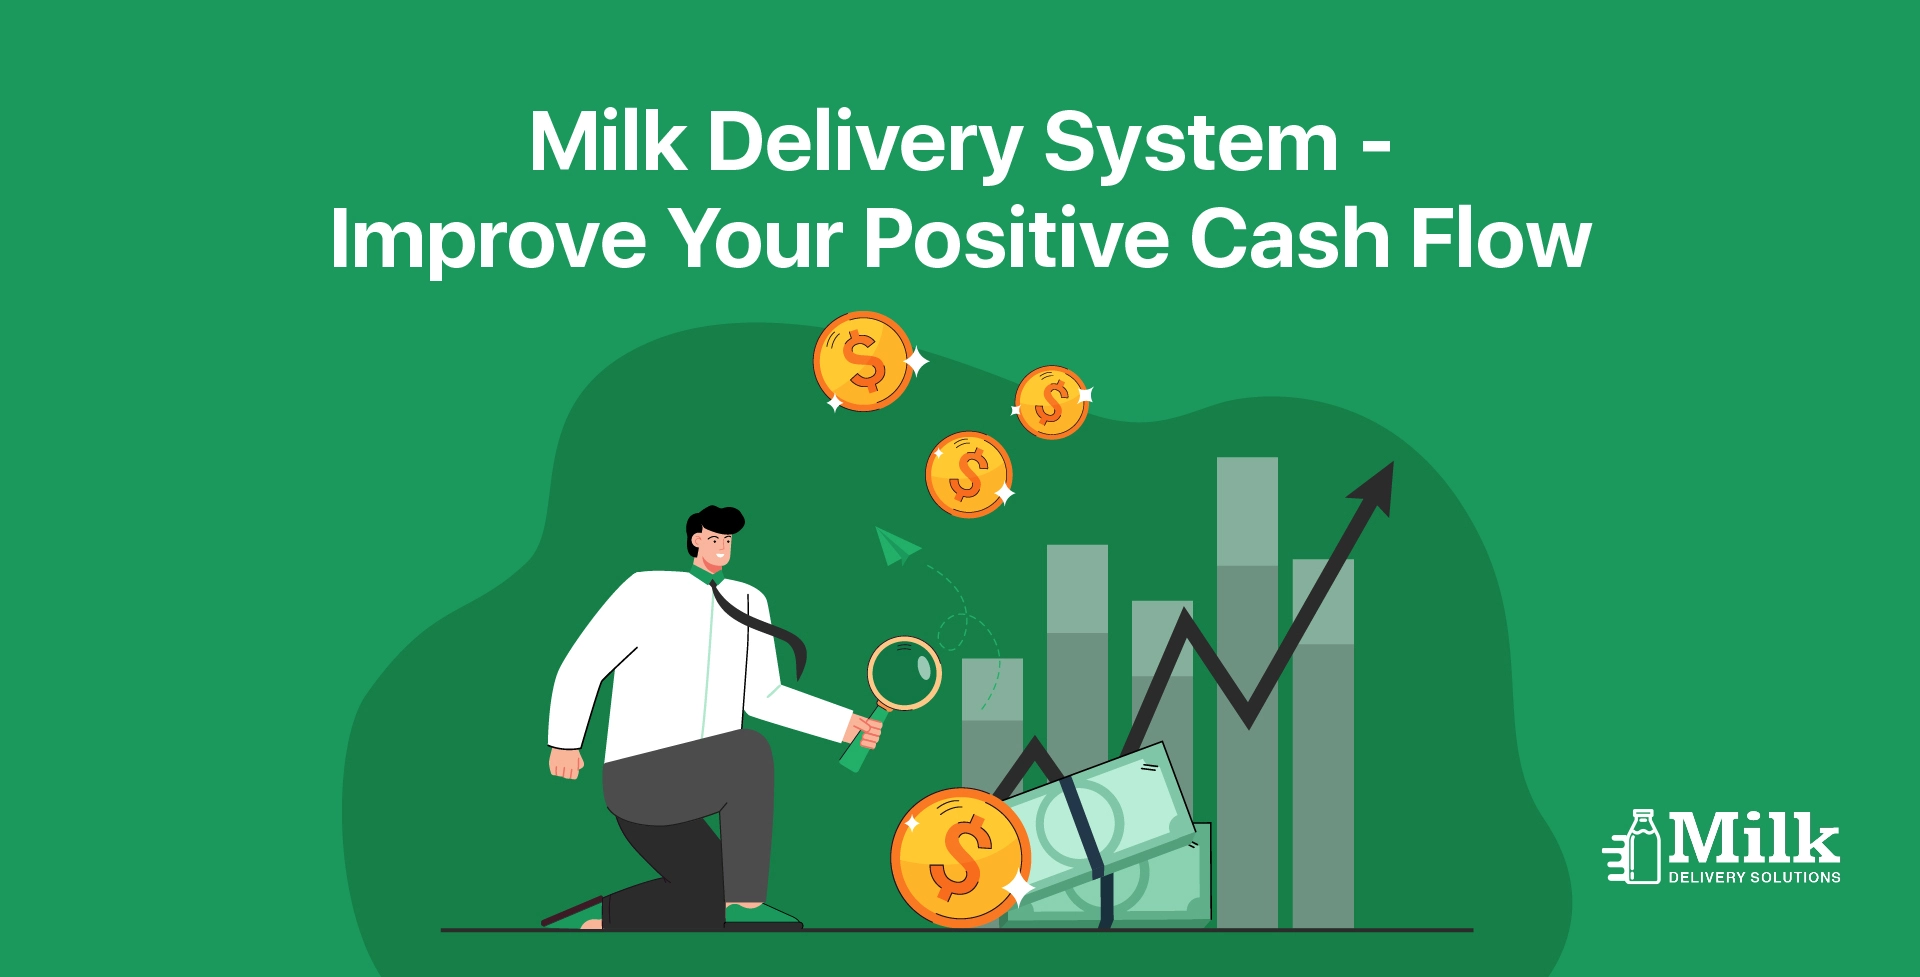 ravi garg, mds, milk delivery, milk delivery system, cash flow, positive cash flow 